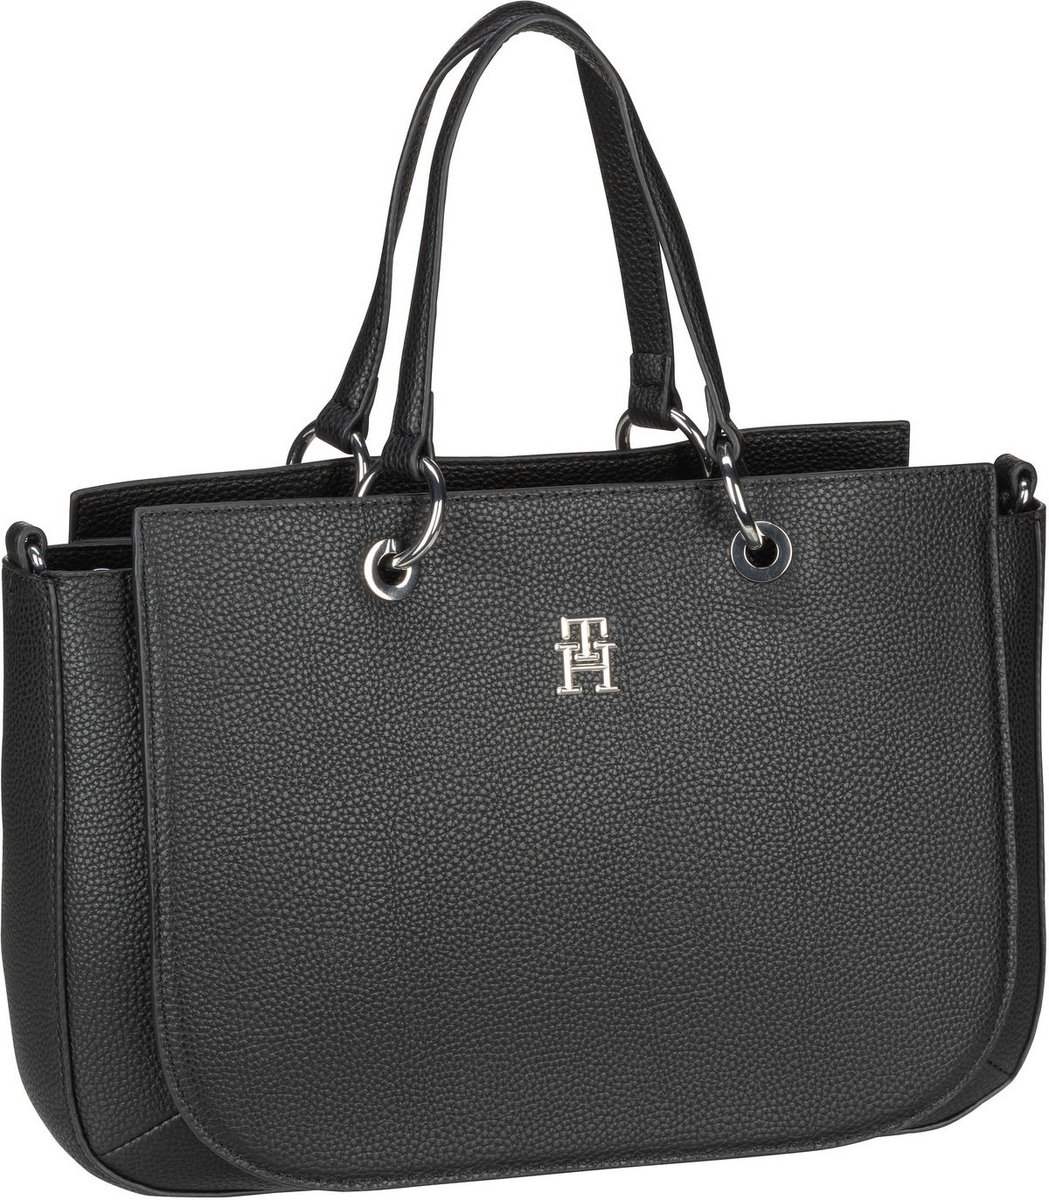 Tommy Hilfiger Handtasche TH Emblem Satchel SP23 Black (8.3 Liter)  - Onlineshop Taschenkaufhaus